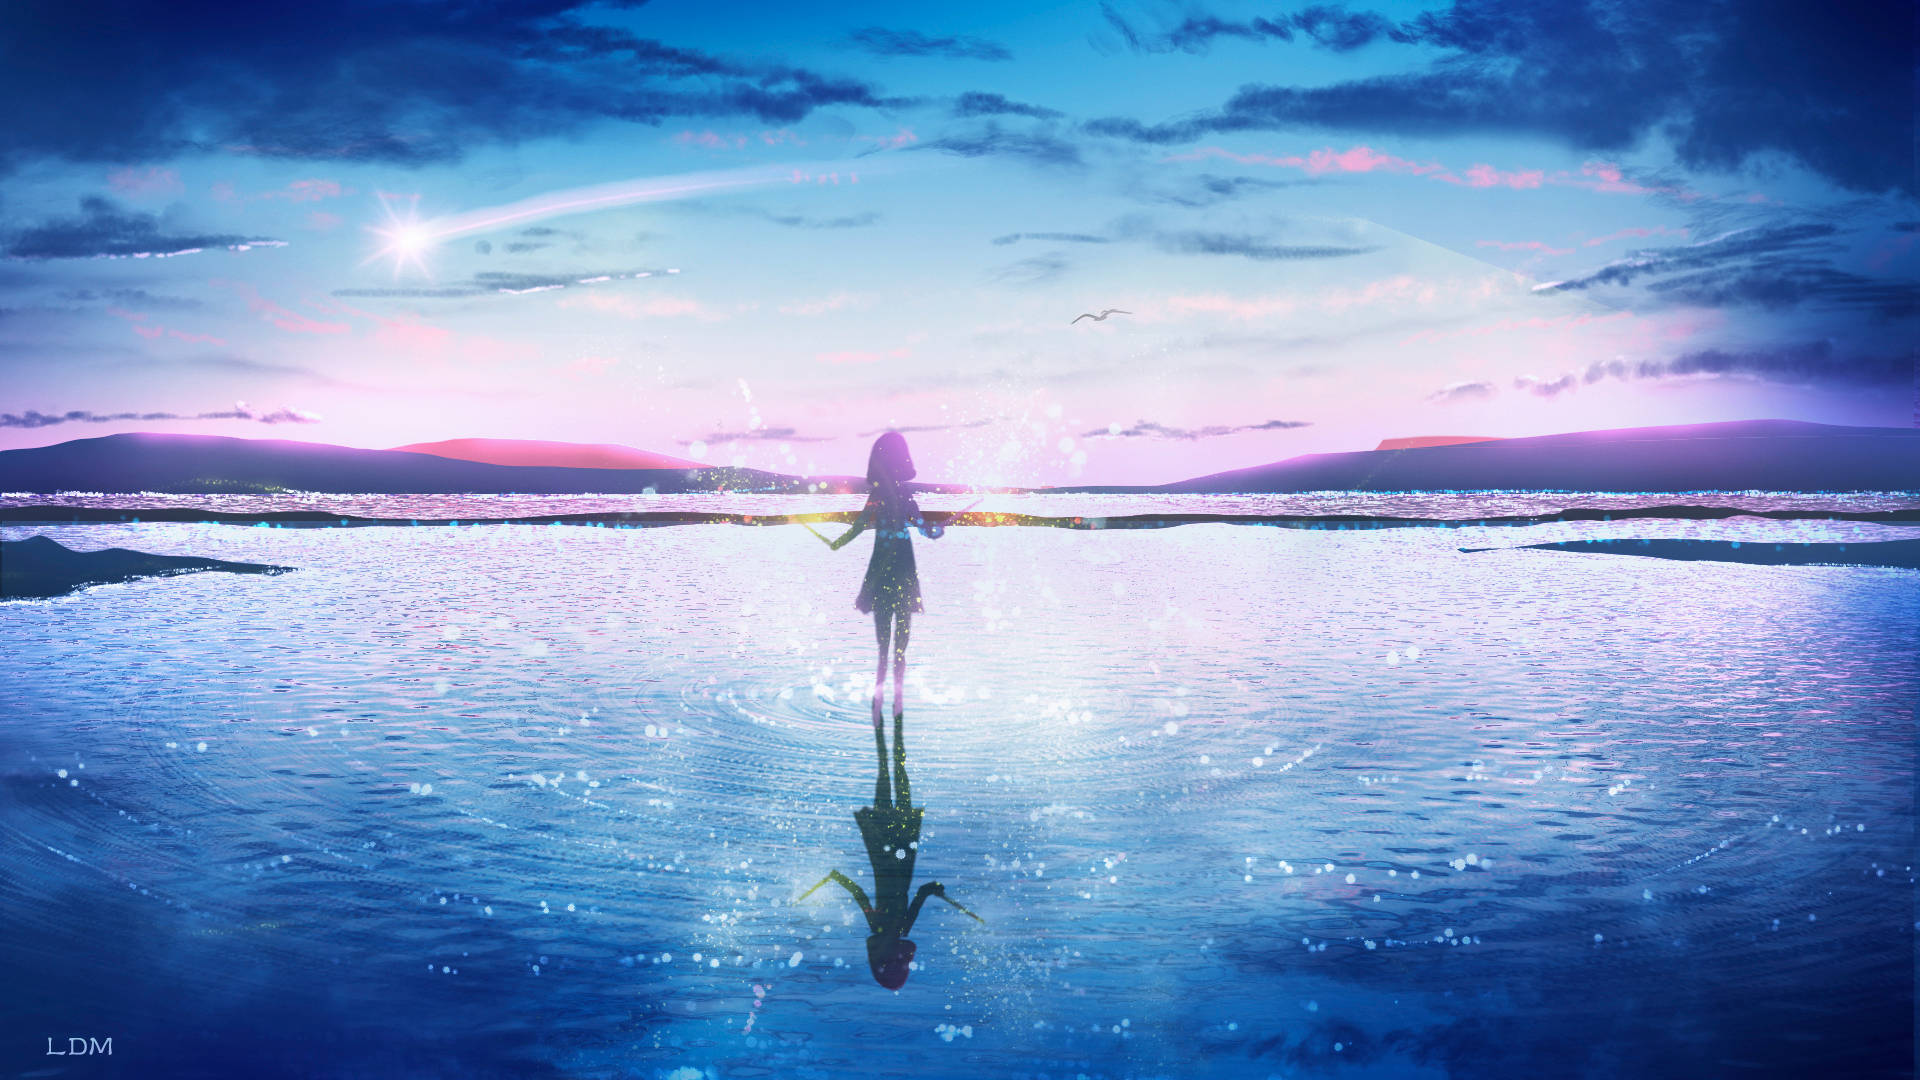 Anime Aesthetic Girl On Water Wallpaper